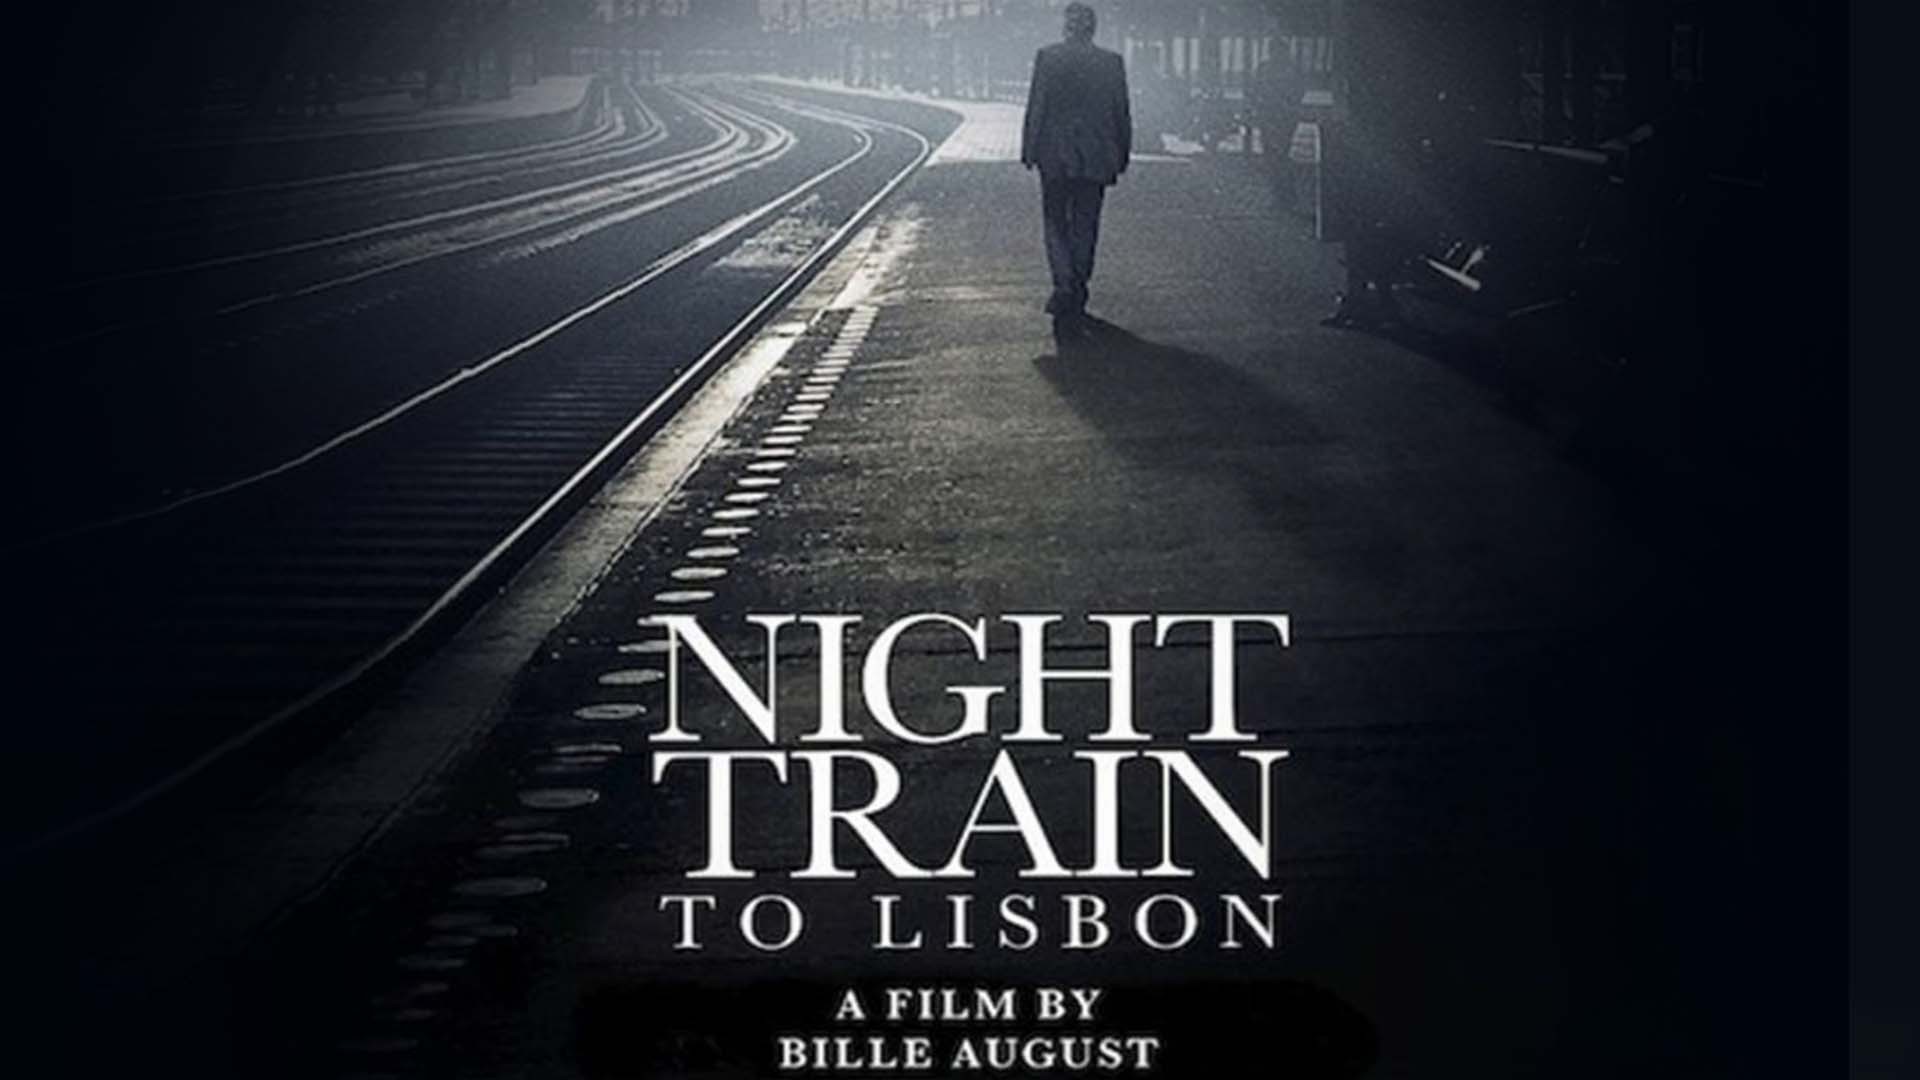 Trenul de noapte spre Lisabona